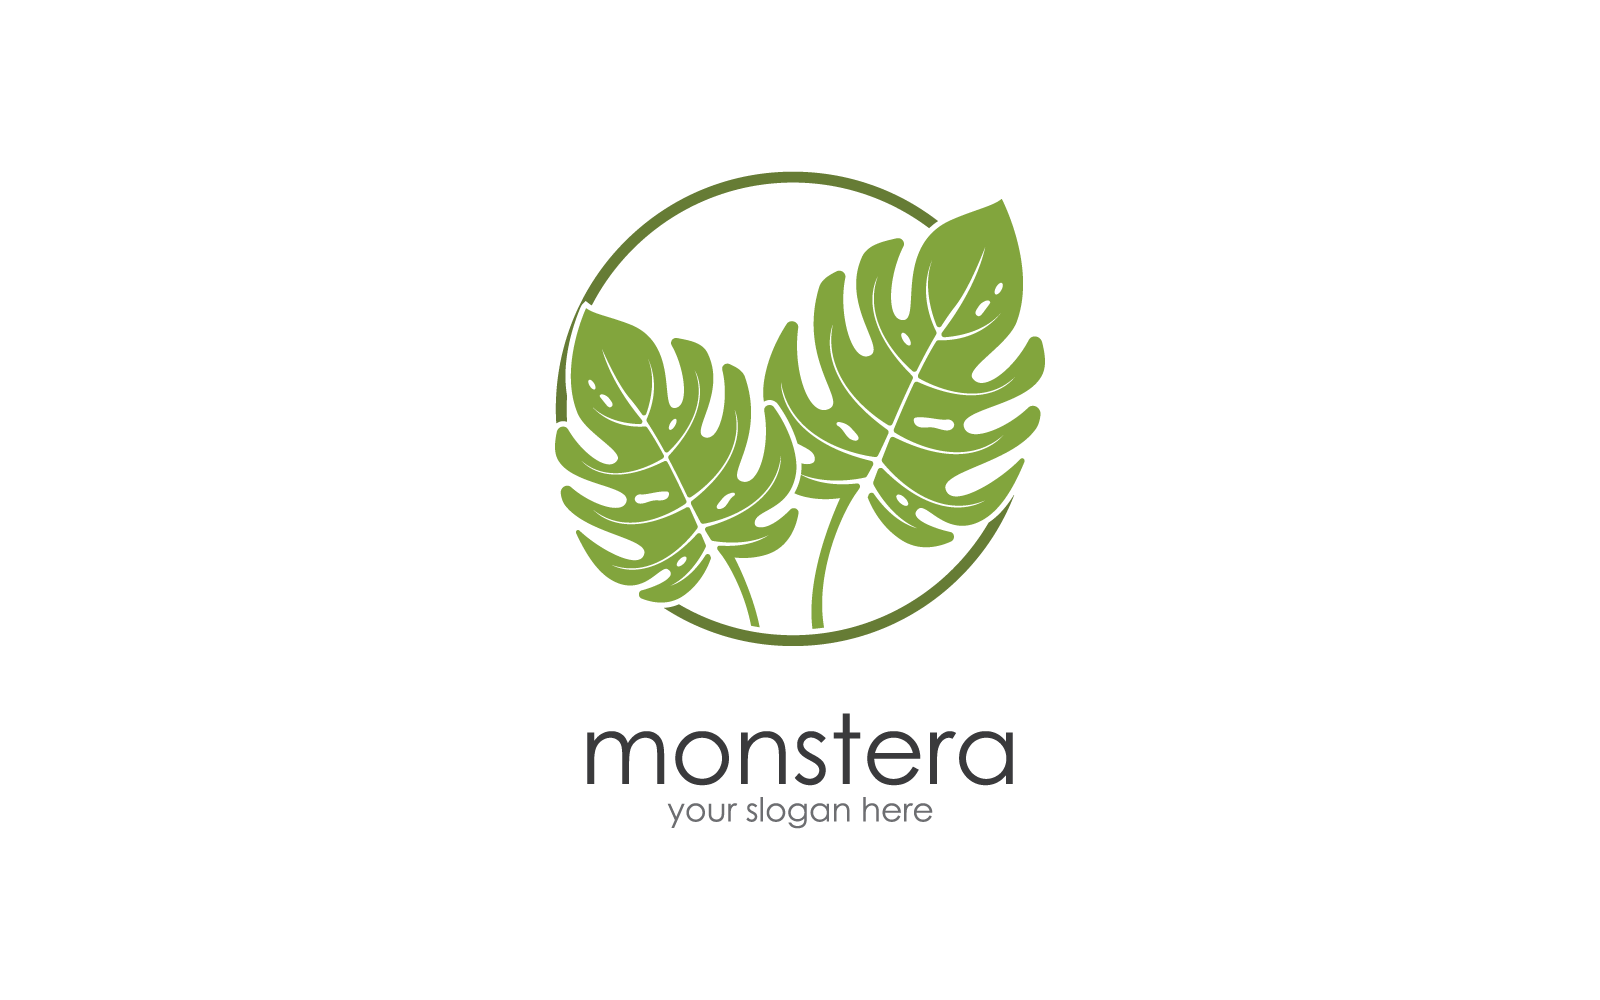 Monstera leaf logo vector design illustration template